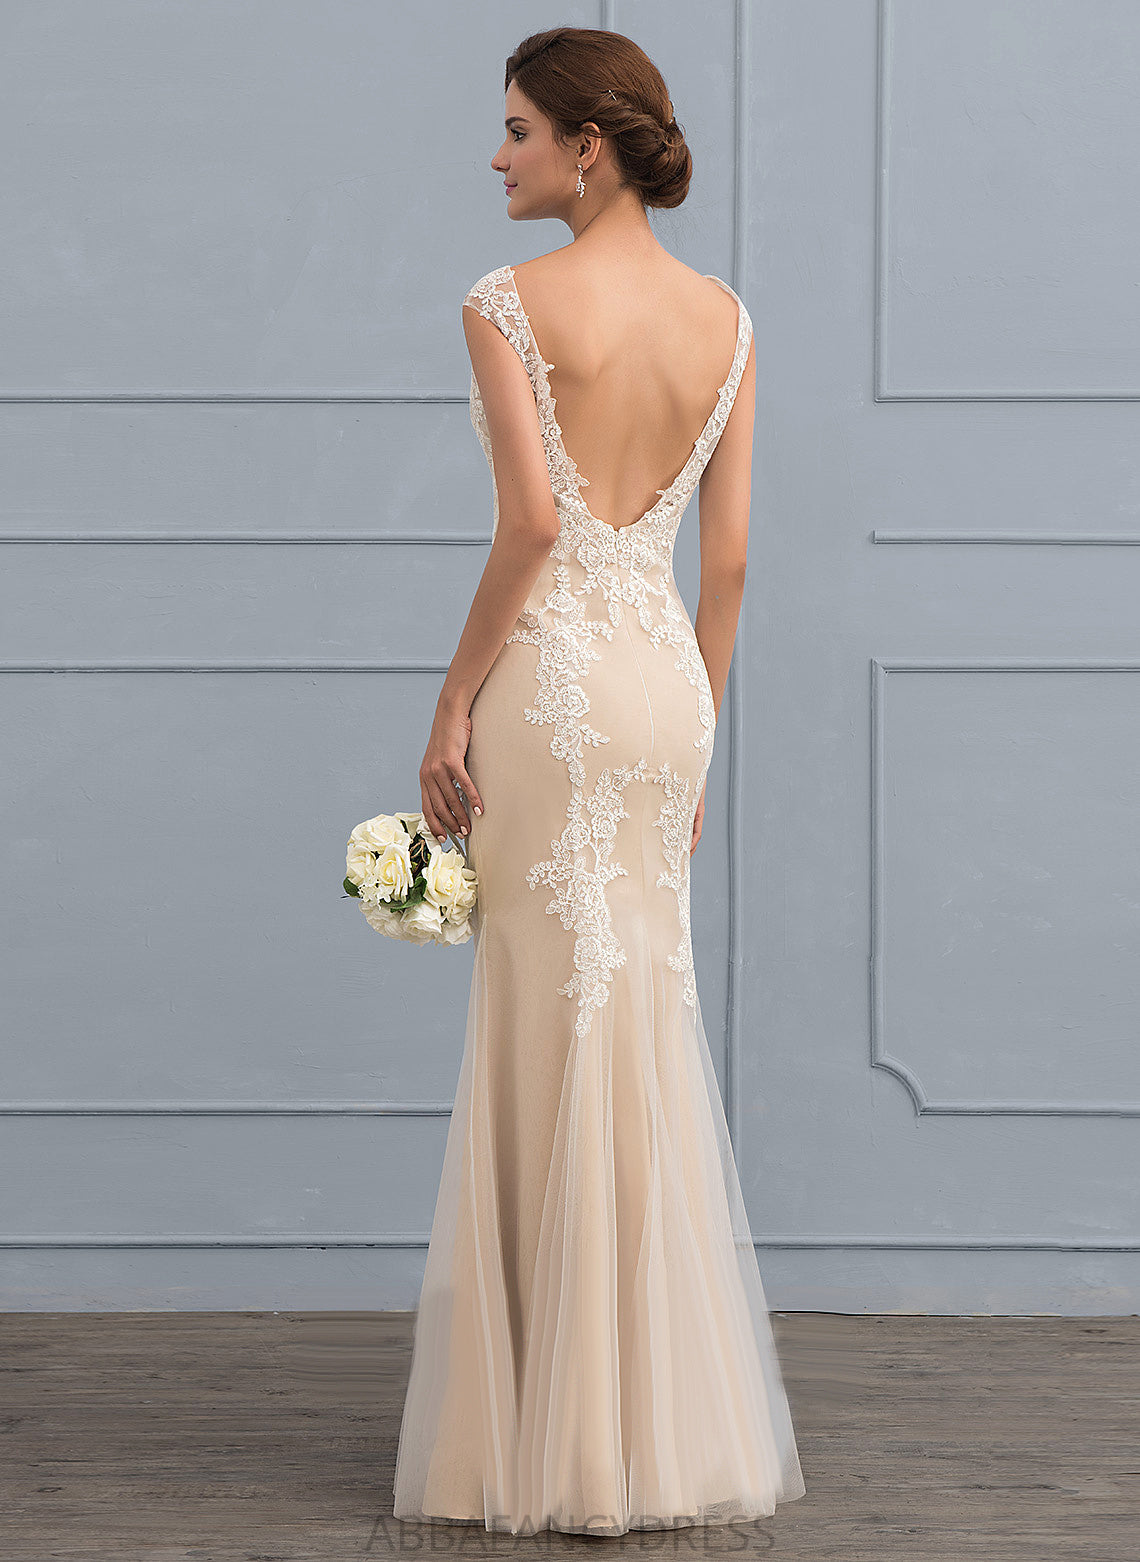 Tulle Trumpet/Mermaid Lace Wedding Dresses Floor-Length Dress Wedding Tania